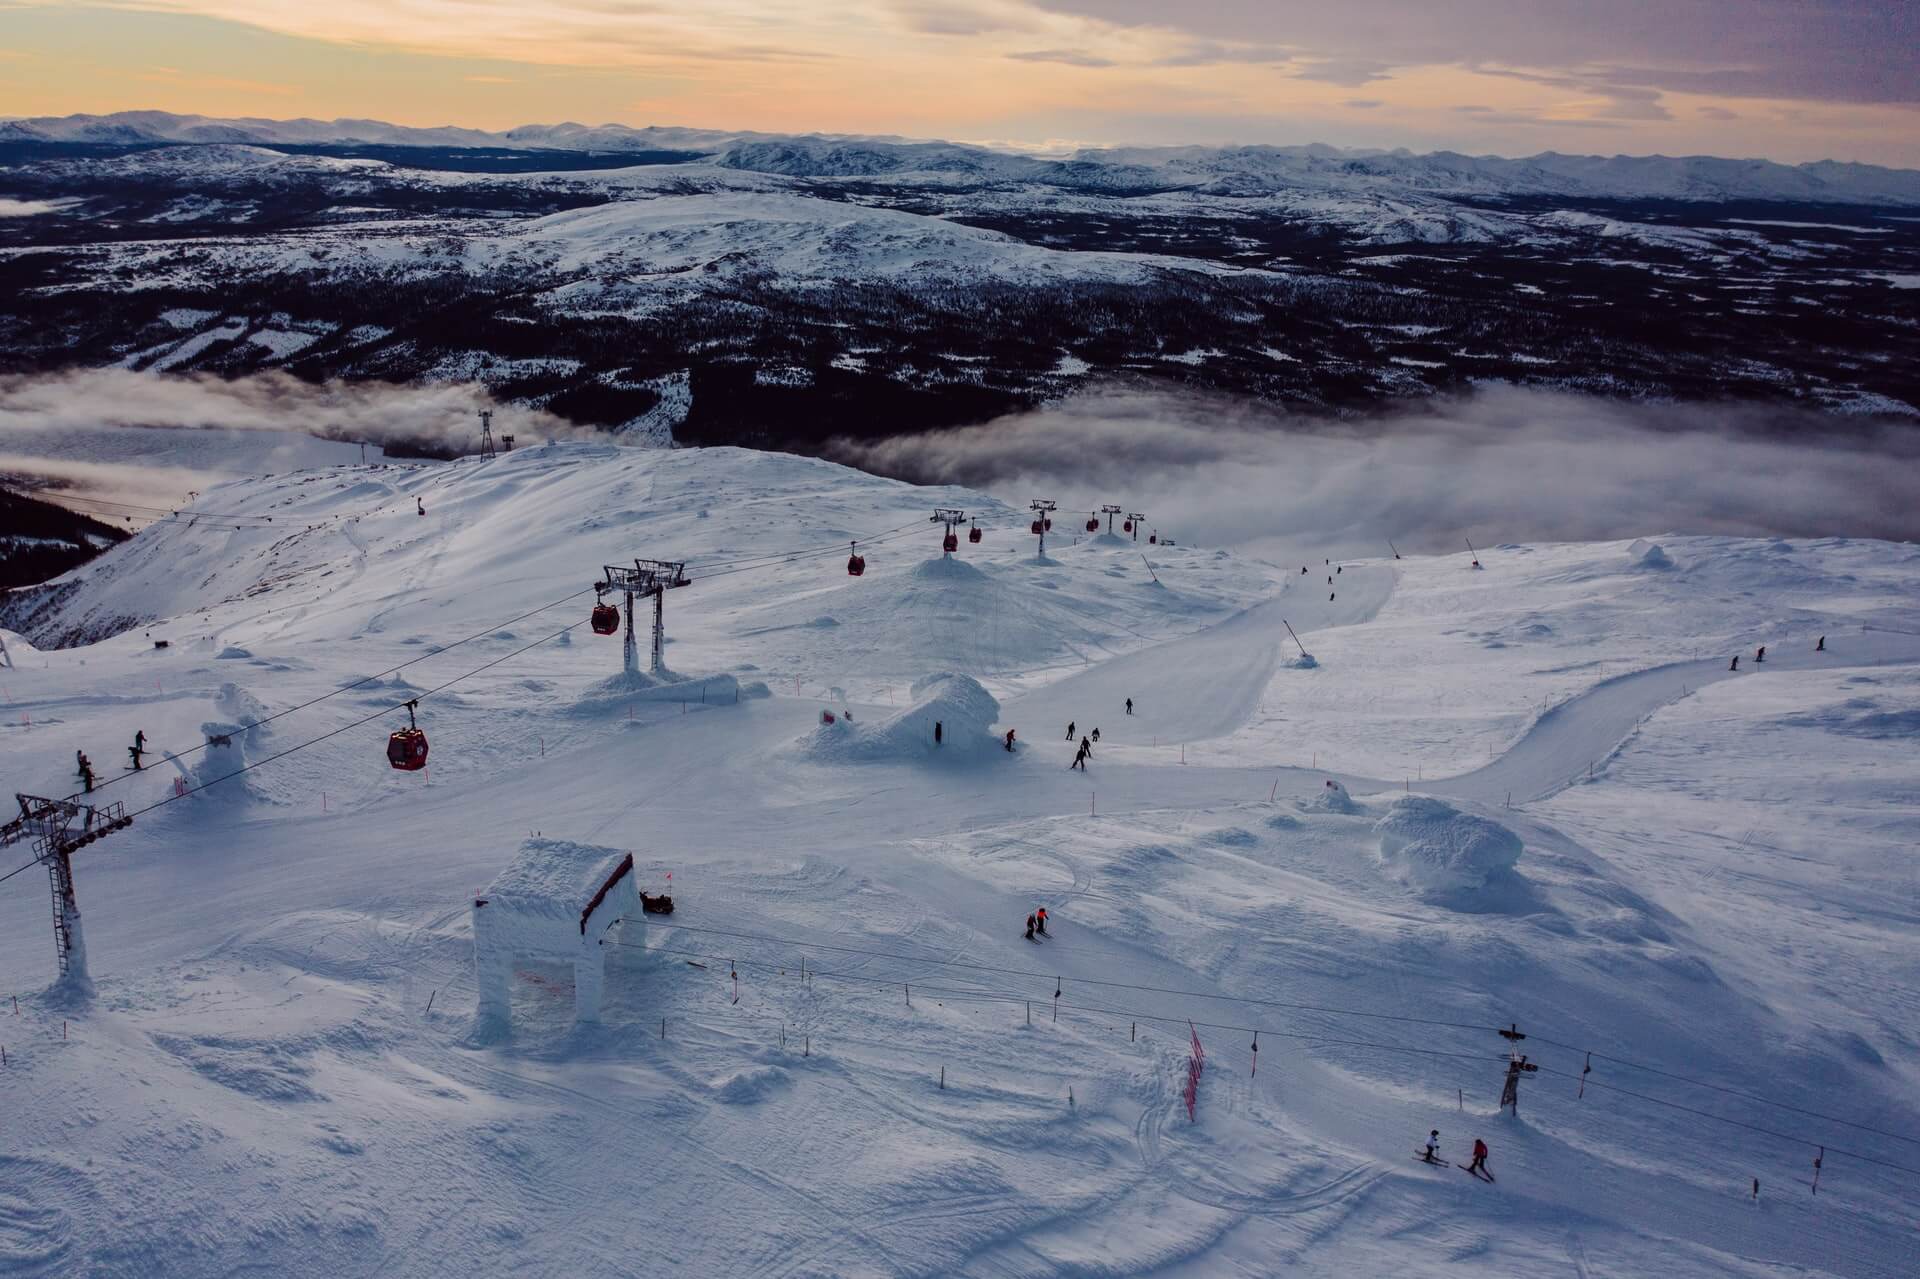 Åre: Ski resort